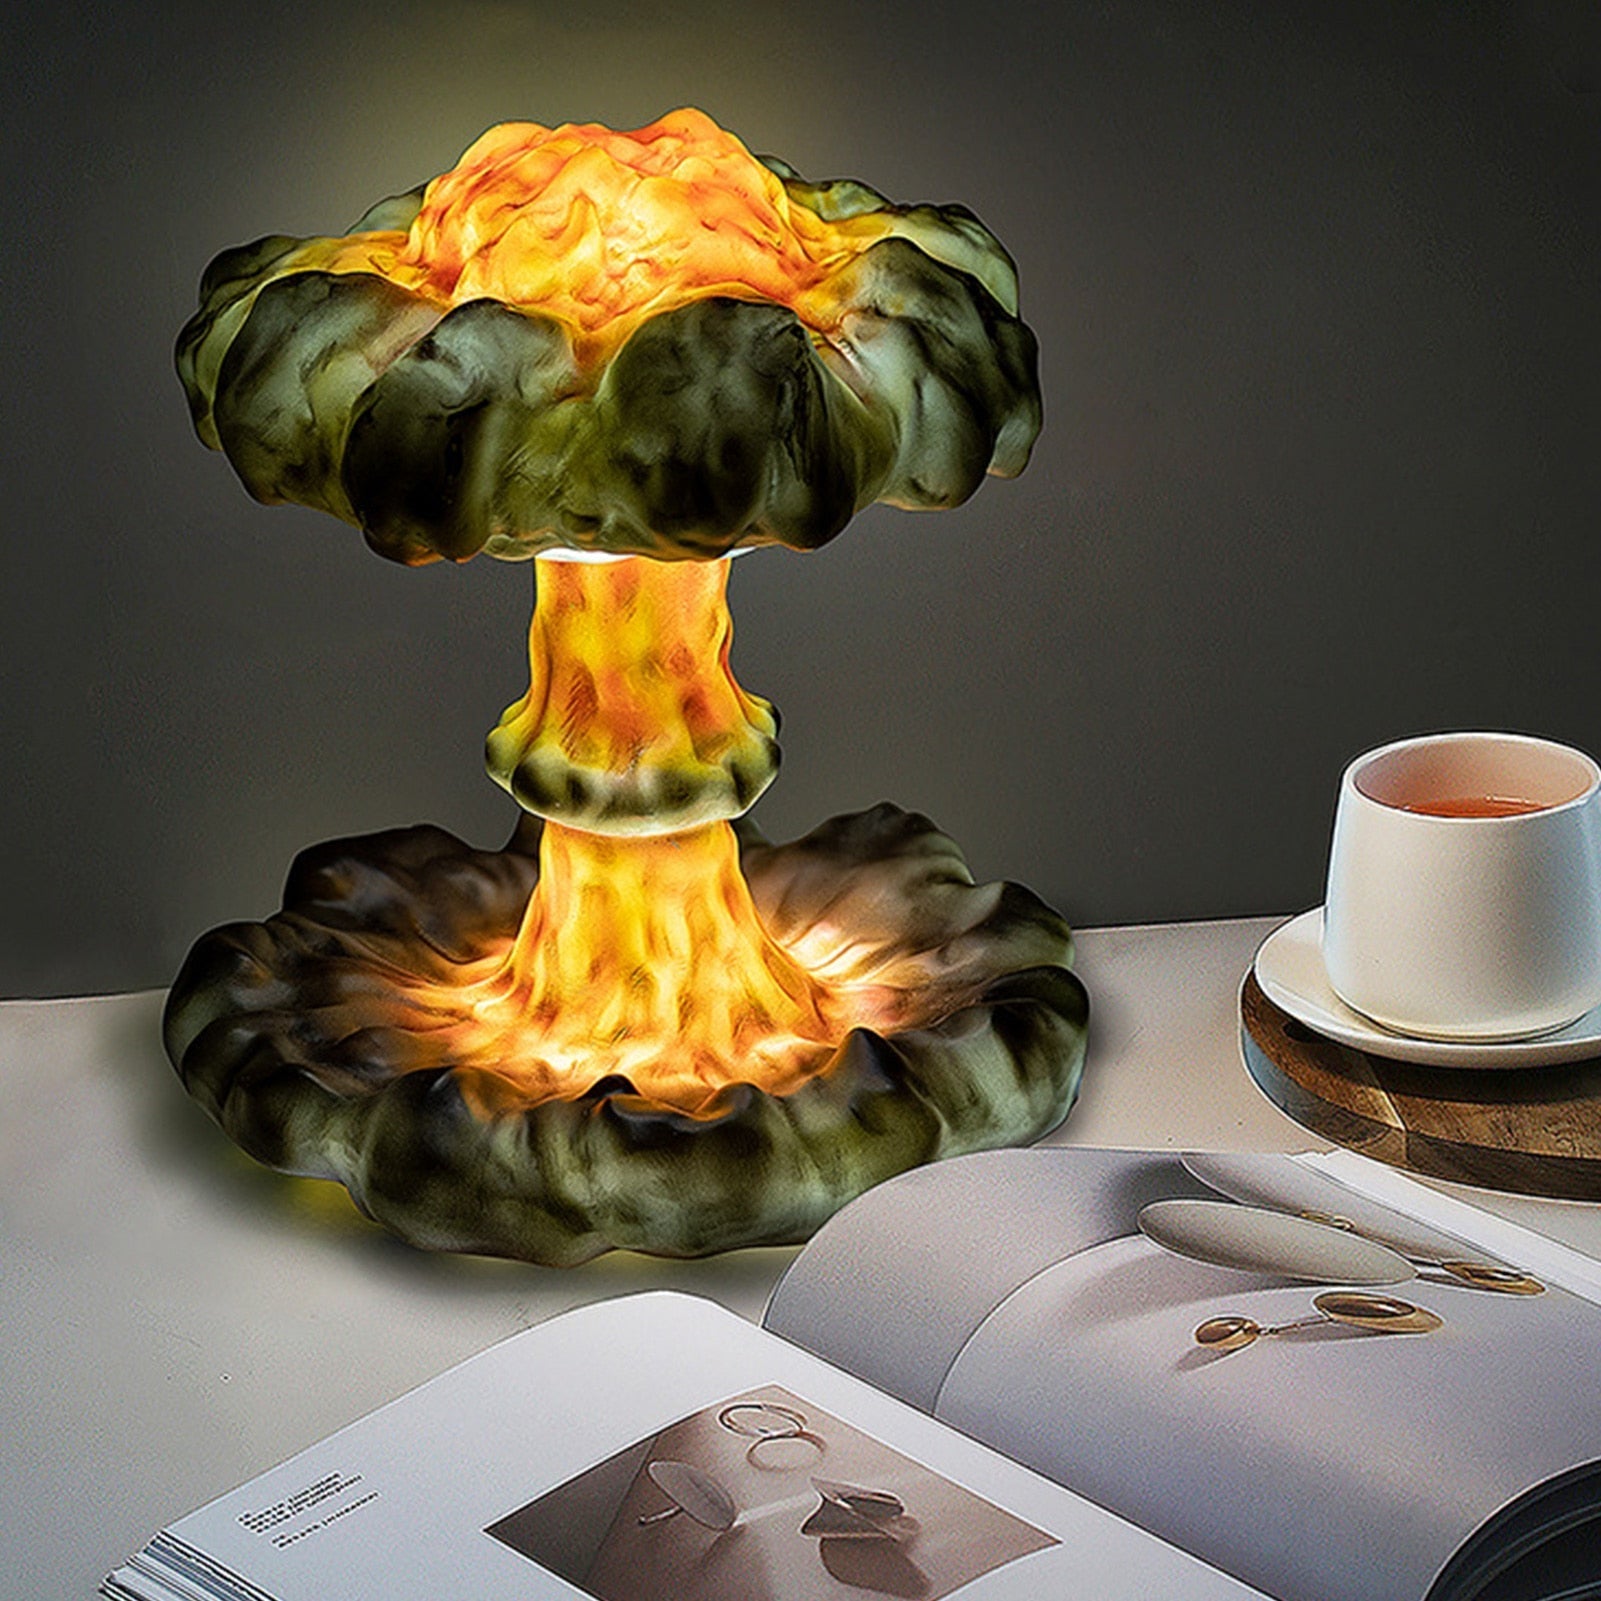 Creative 3D Mushroom Cloud Night Lamp